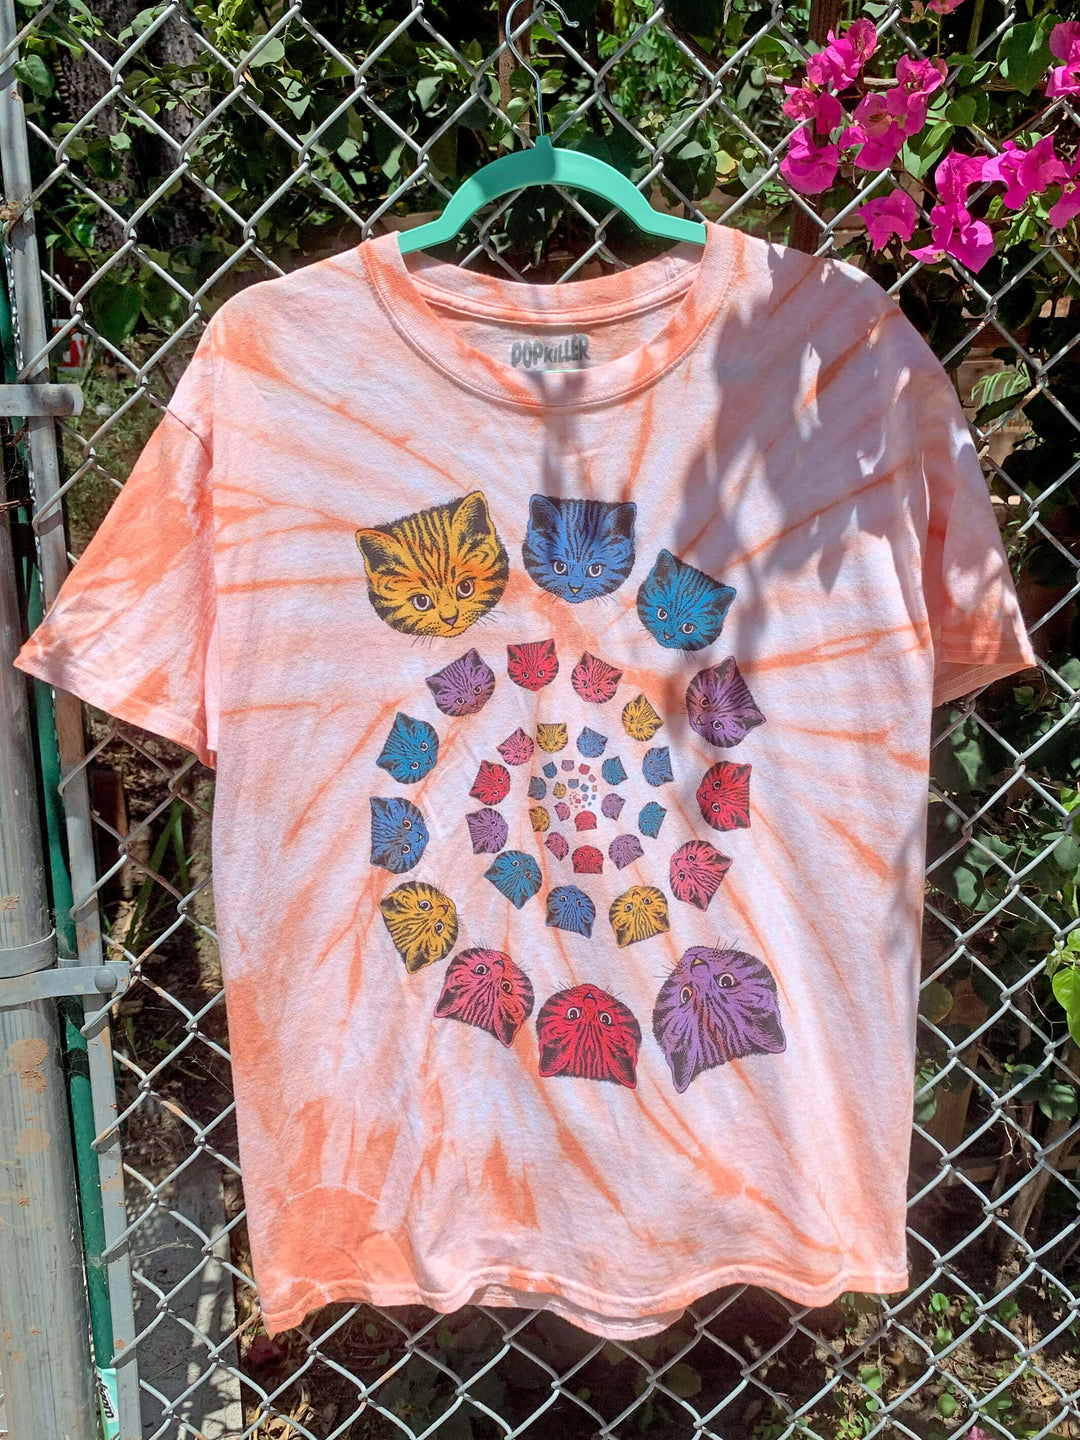 Rainbow spiral cat tie dye t-shirt.